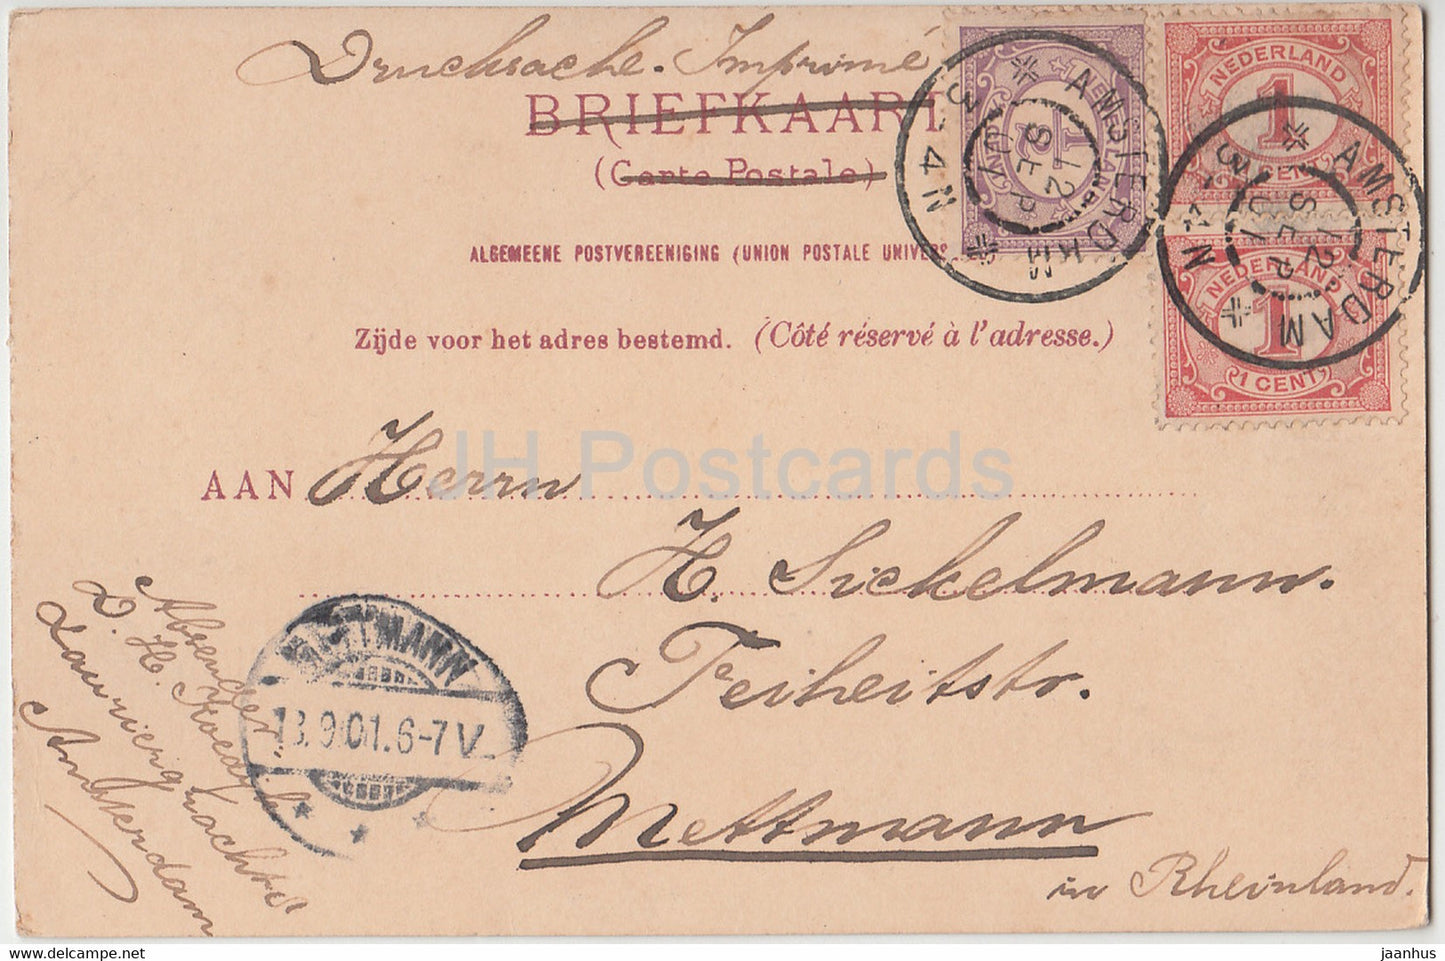 Amsterdam - Ygracht - Schiff - alte Postkarte - 1901 - Niederlande - gebraucht